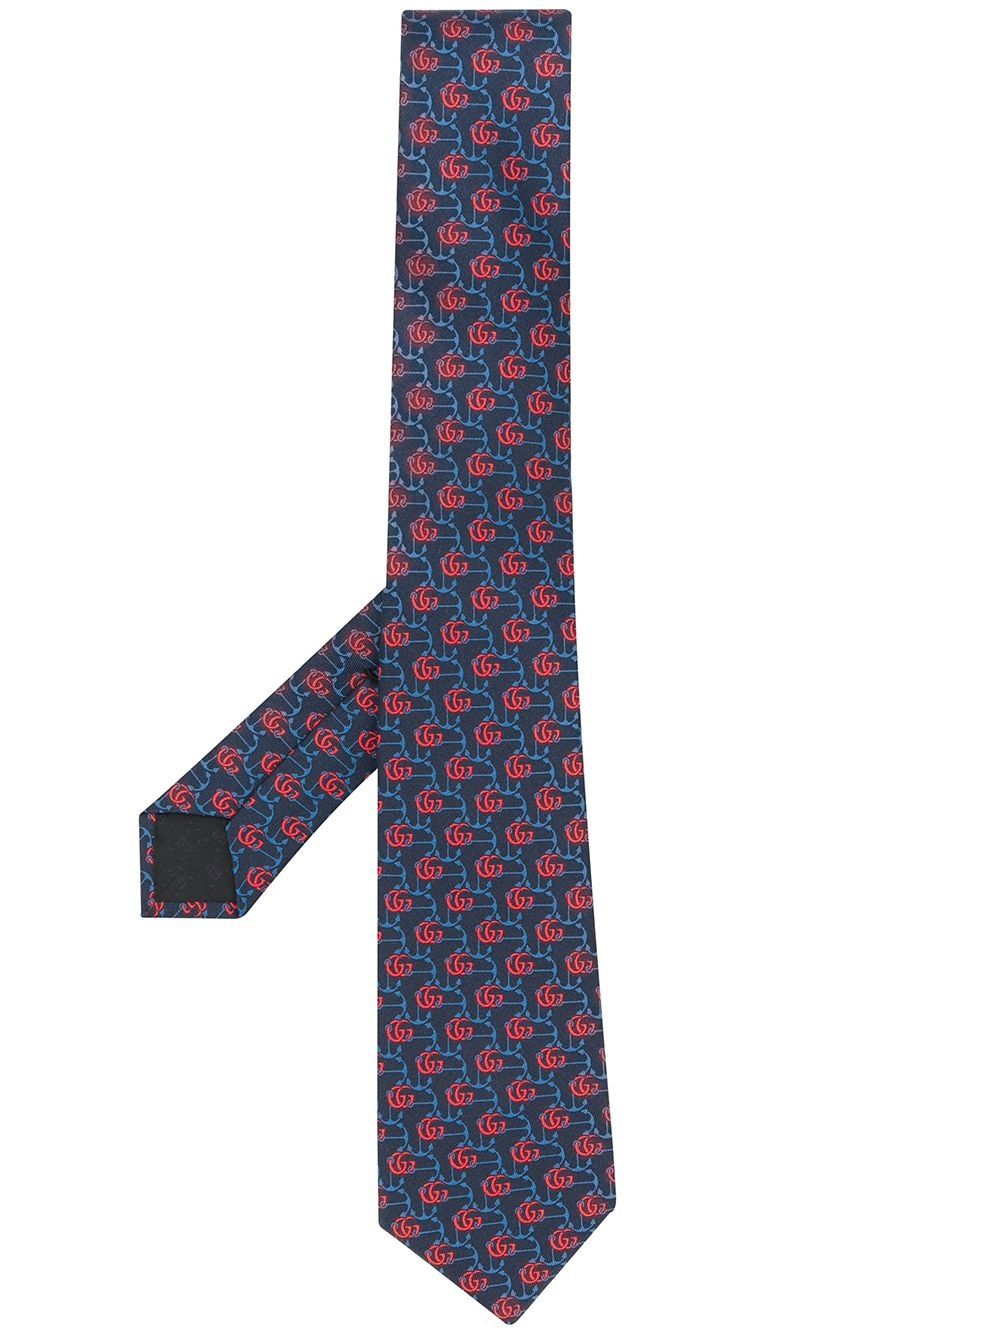 Regular Rare GUCCI Gucci Old Logo Pirates Tie Clip Tie Clip 3